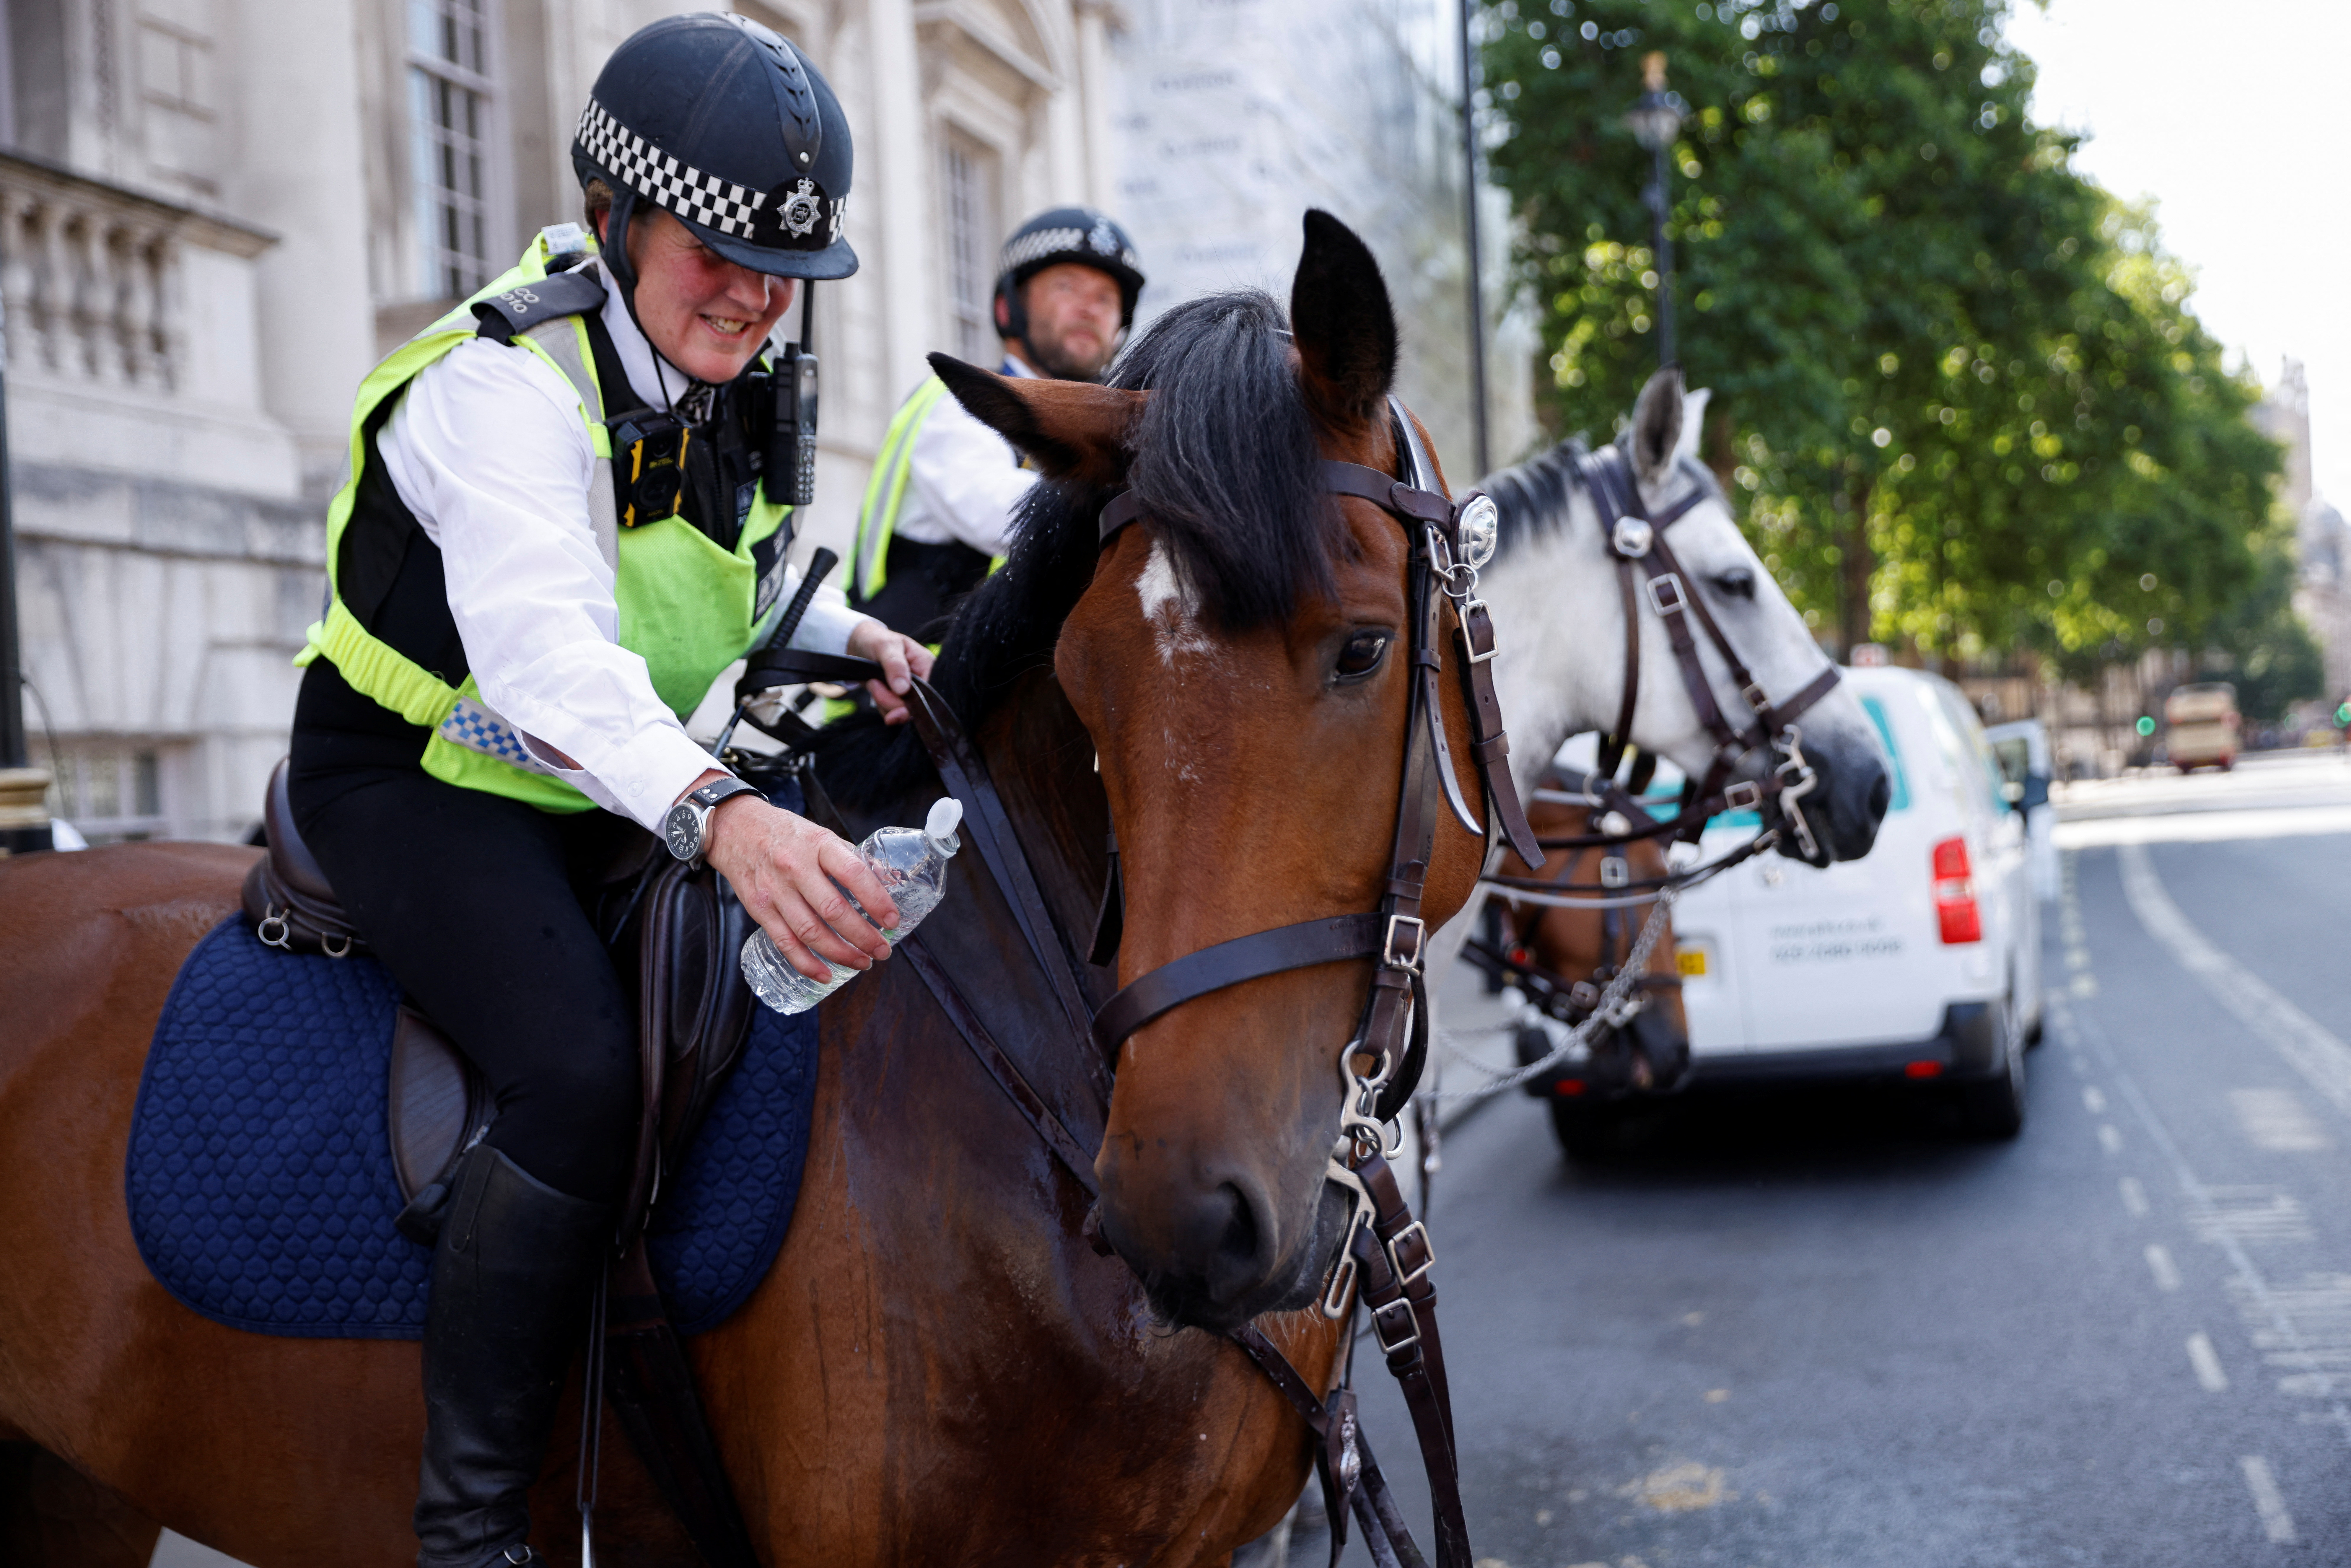 Un oficial de policía ofrece una botella de agua a un caballo de la policía llamado Zack durante el clima caluroso, en Whitehall en Londres, Gran Bretaña, el 18 de julio de 2022 (REUTERS/John Sibley)